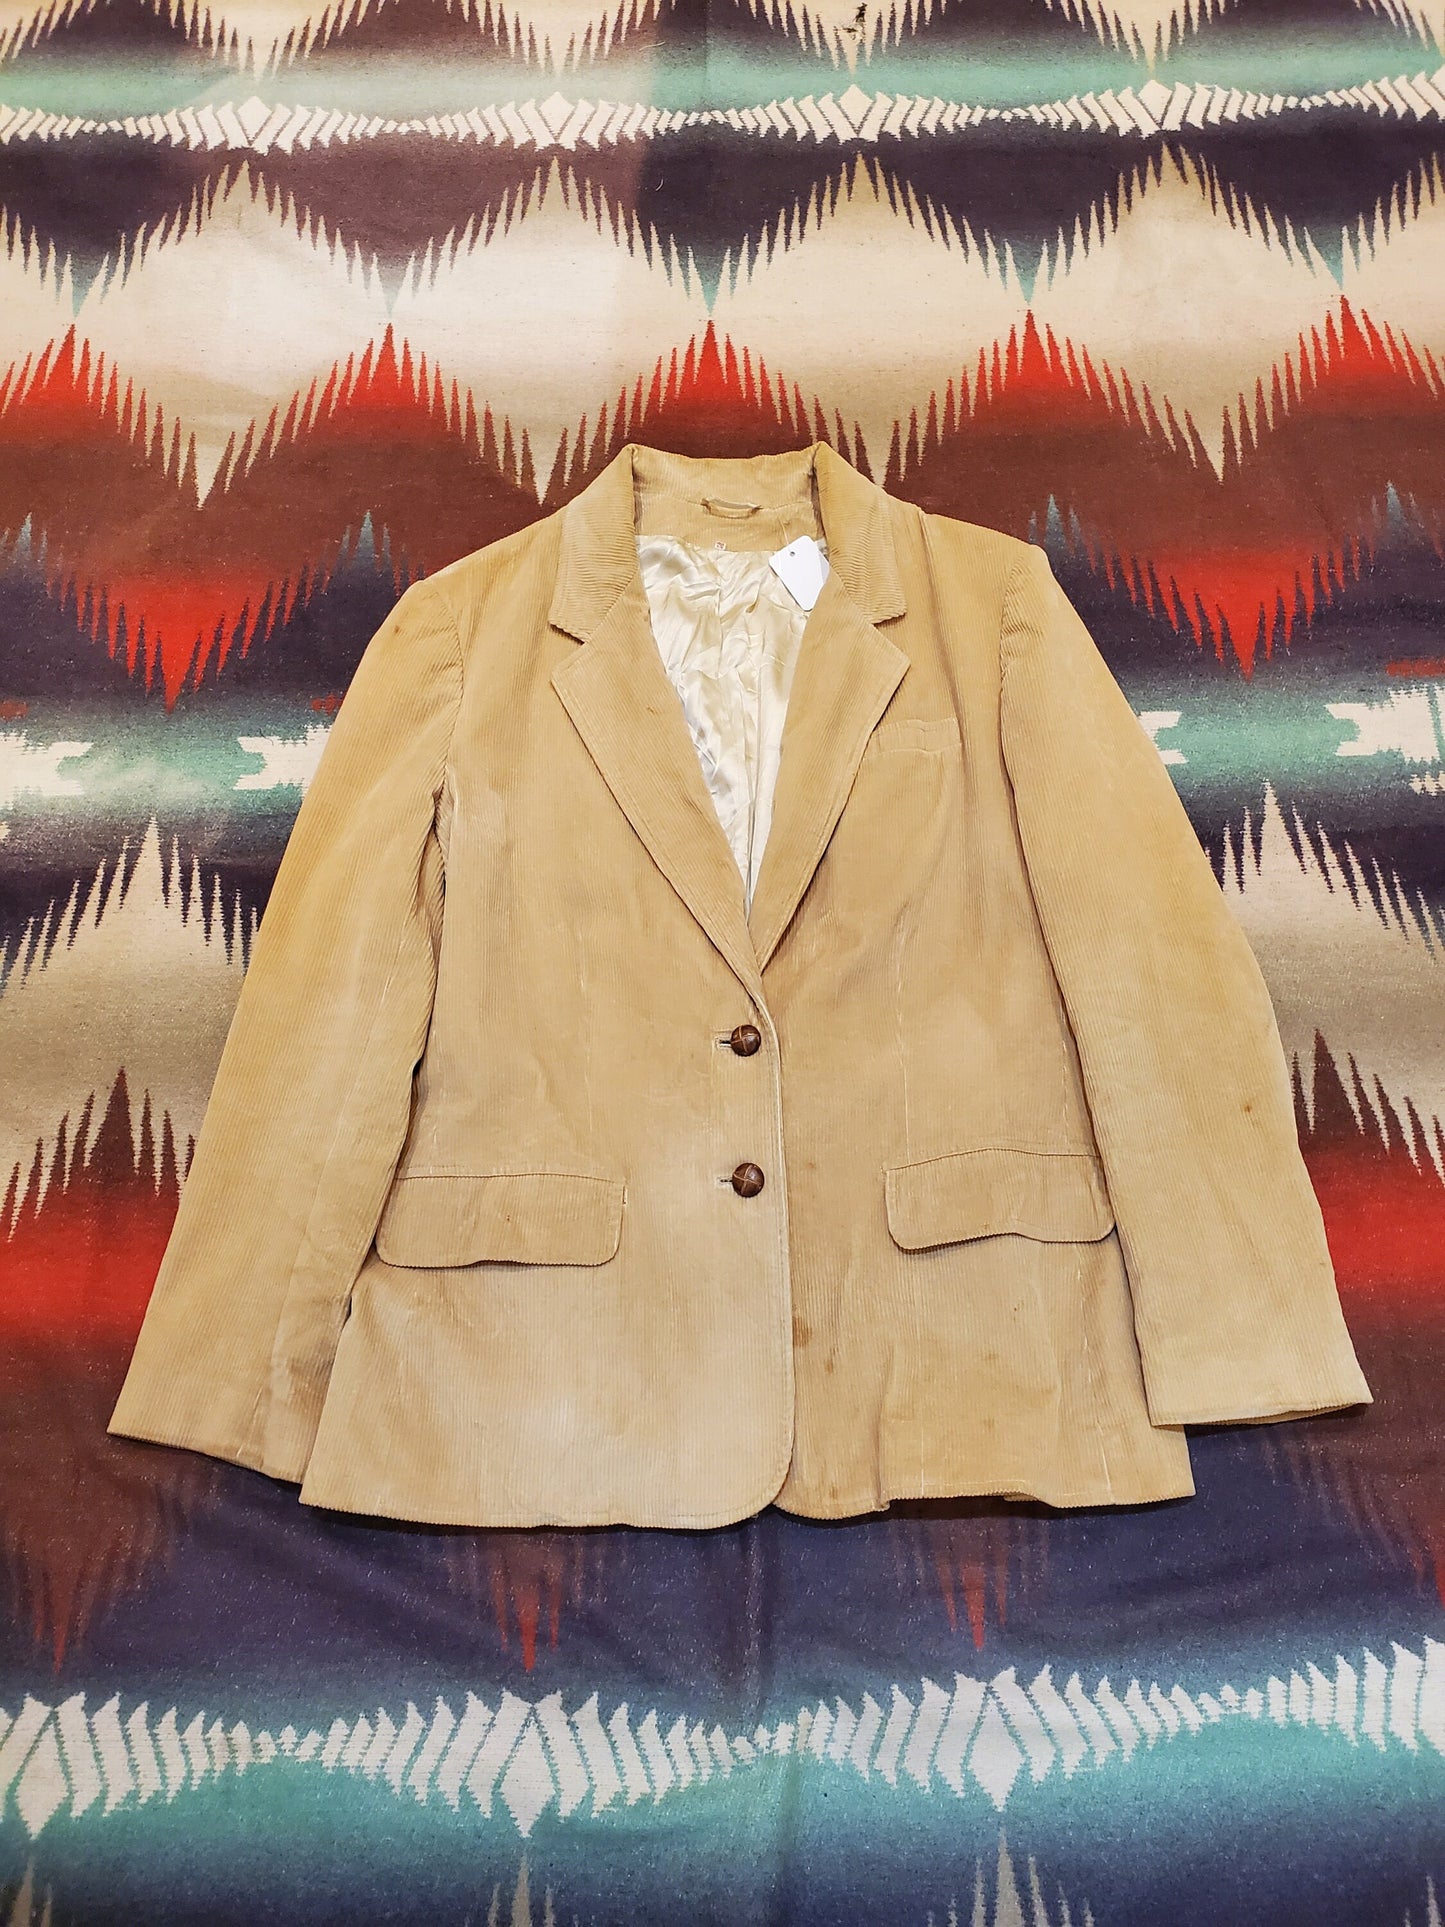 1980s Sears Classic Fashions Corduroy Blazer Jacket Size M